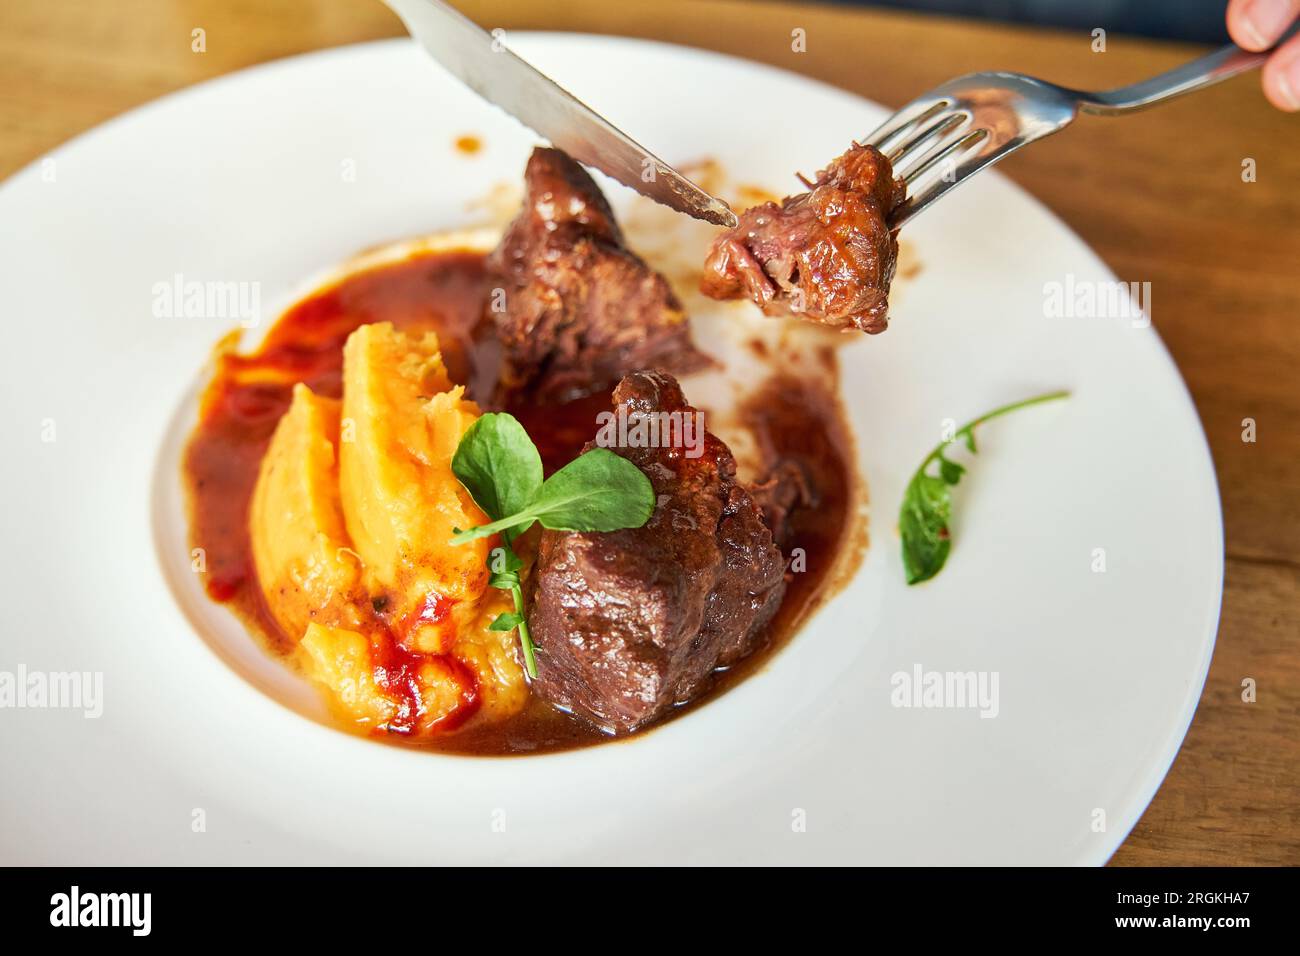 Dettaglio delle forchette che consentono a una persona di afferrare un pezzo di carne tagliata da un piatto di guance di vitello con mojo di cocco e purea di tonno con salsa d'arancia Foto Stock